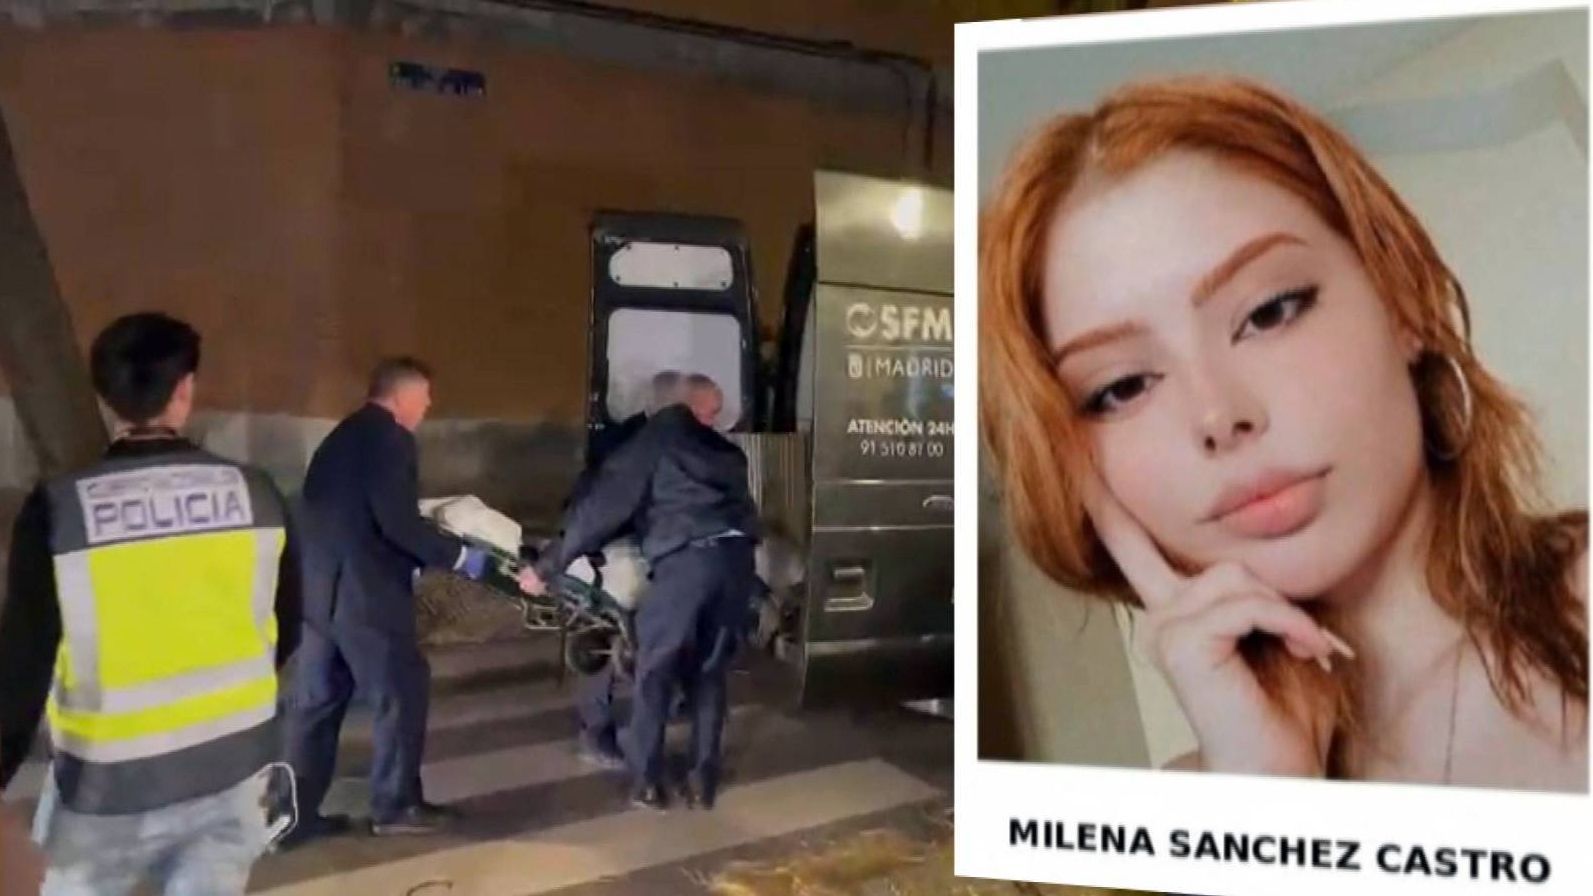 El cuerpo de Milena Sánchez Castro fue encontrado porque envió su ubicación  a sus compañeras de piso